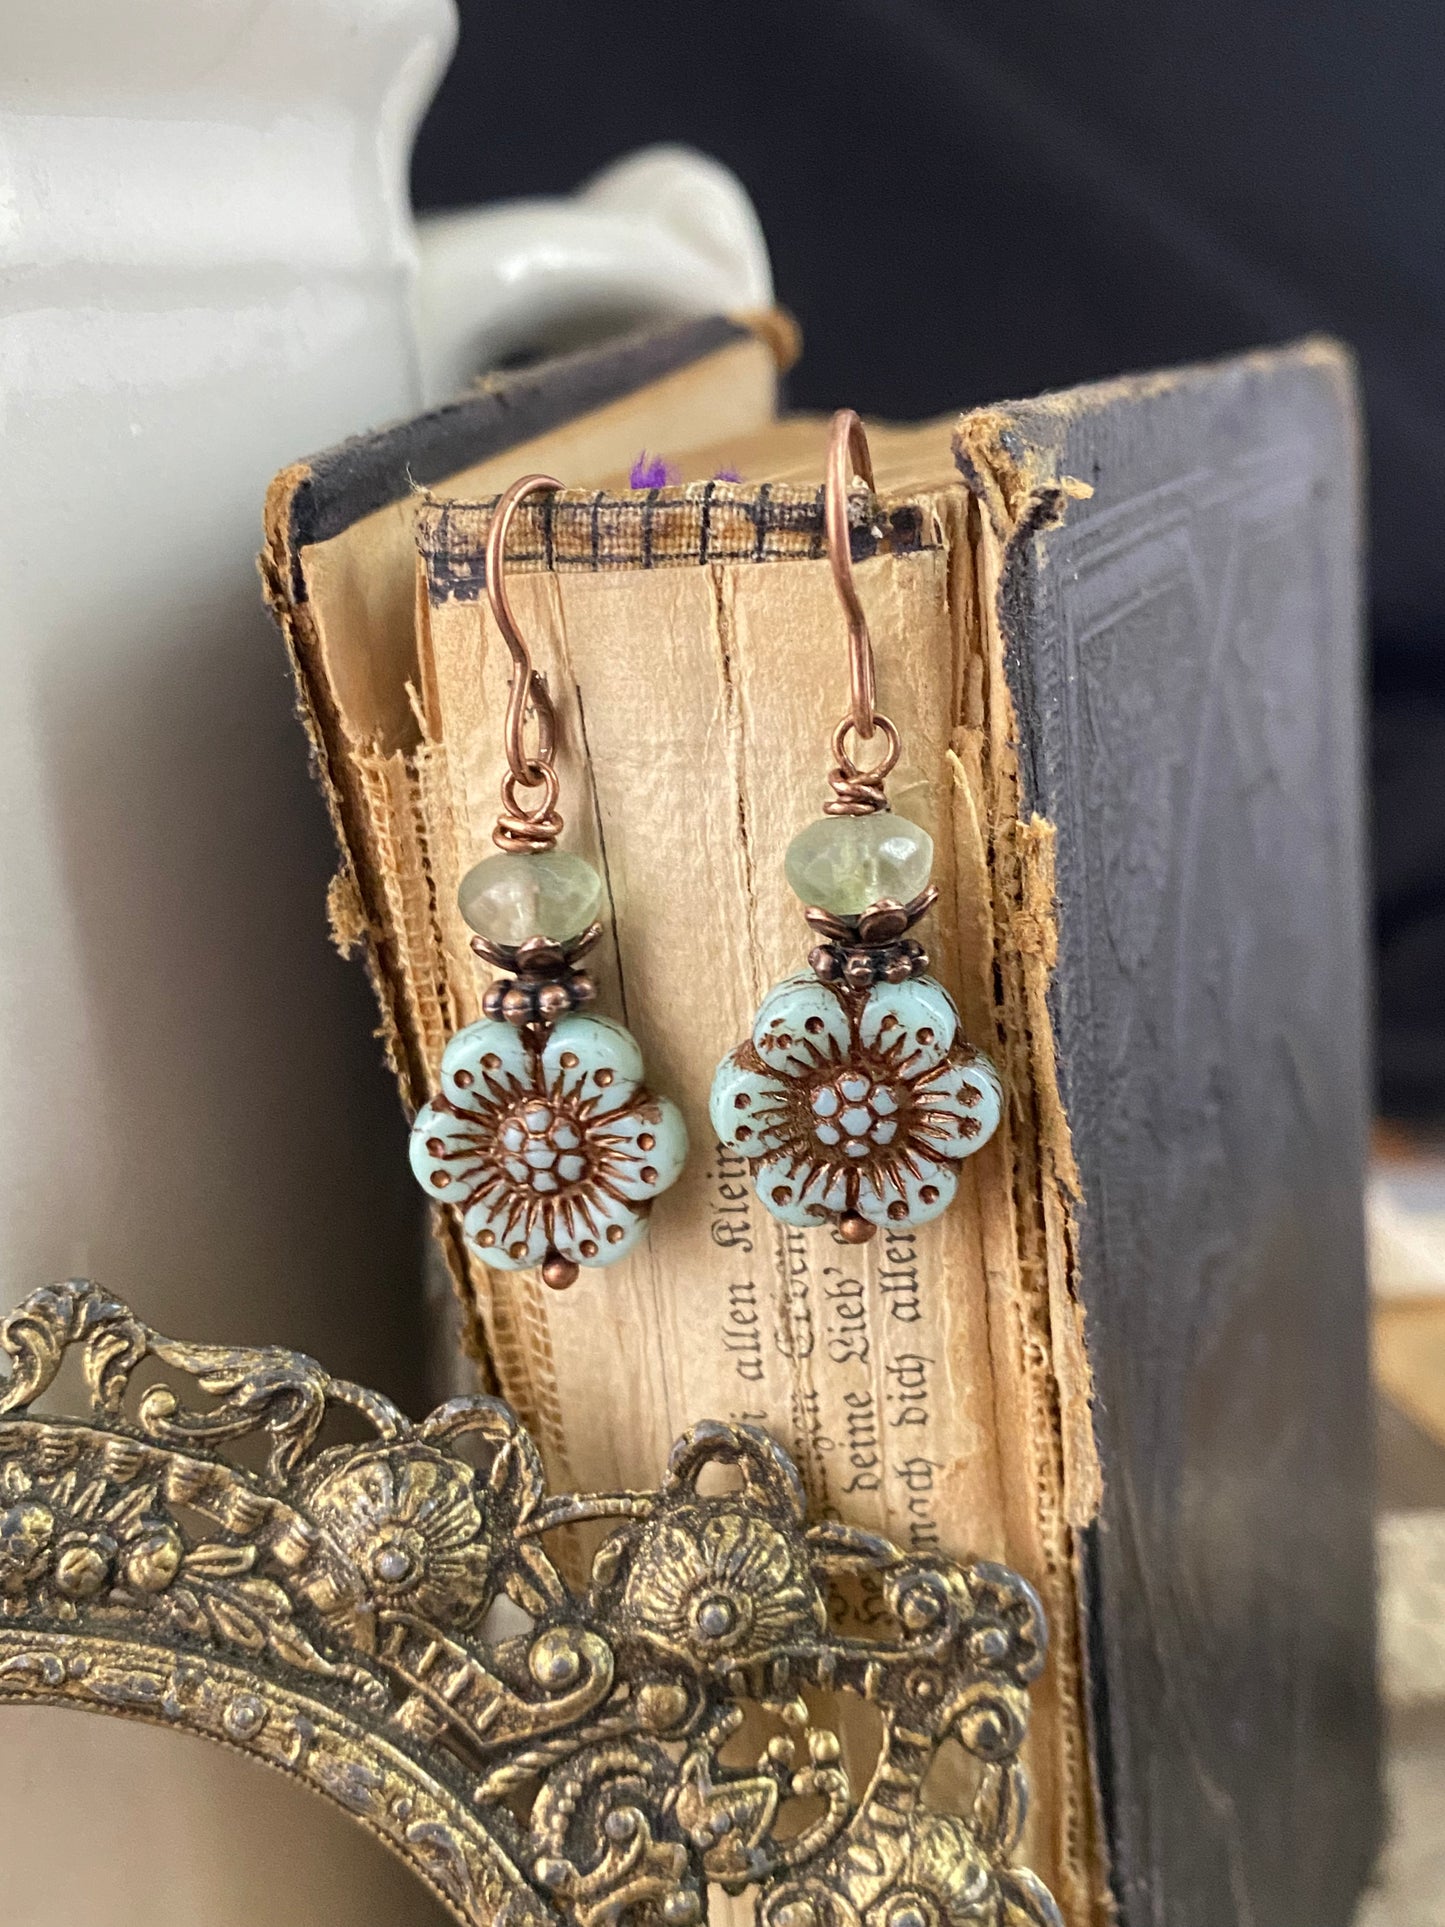 Flower Czech glass in light green and blue, copper metal earrings, jewelry